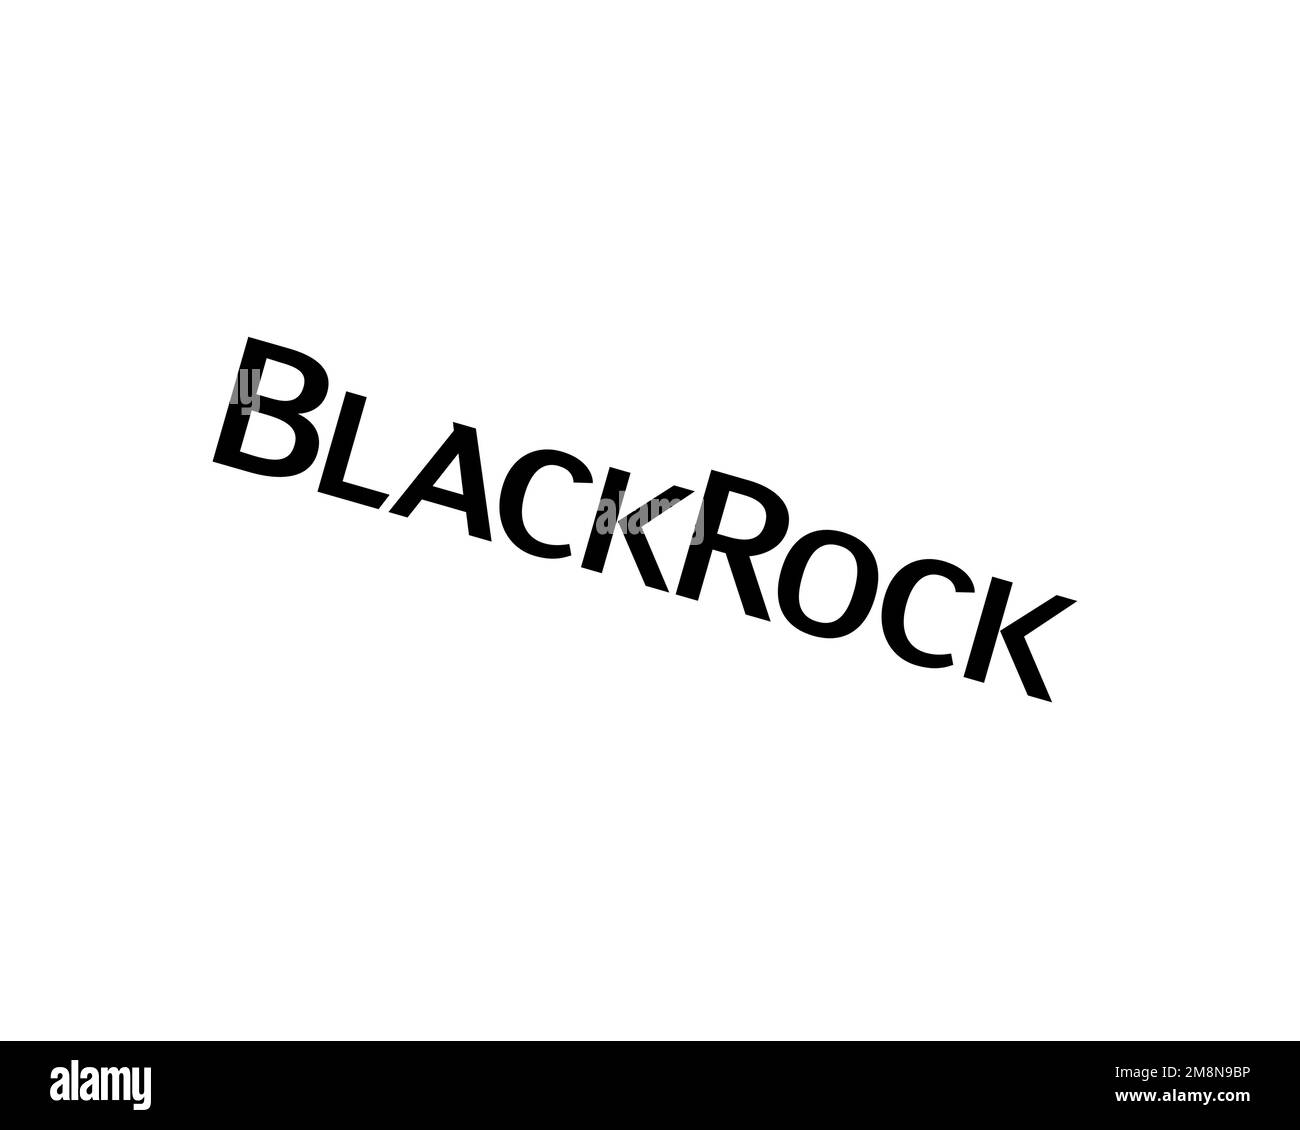 BlackRock, rotated logo, white background B Stock Photo - Alamy